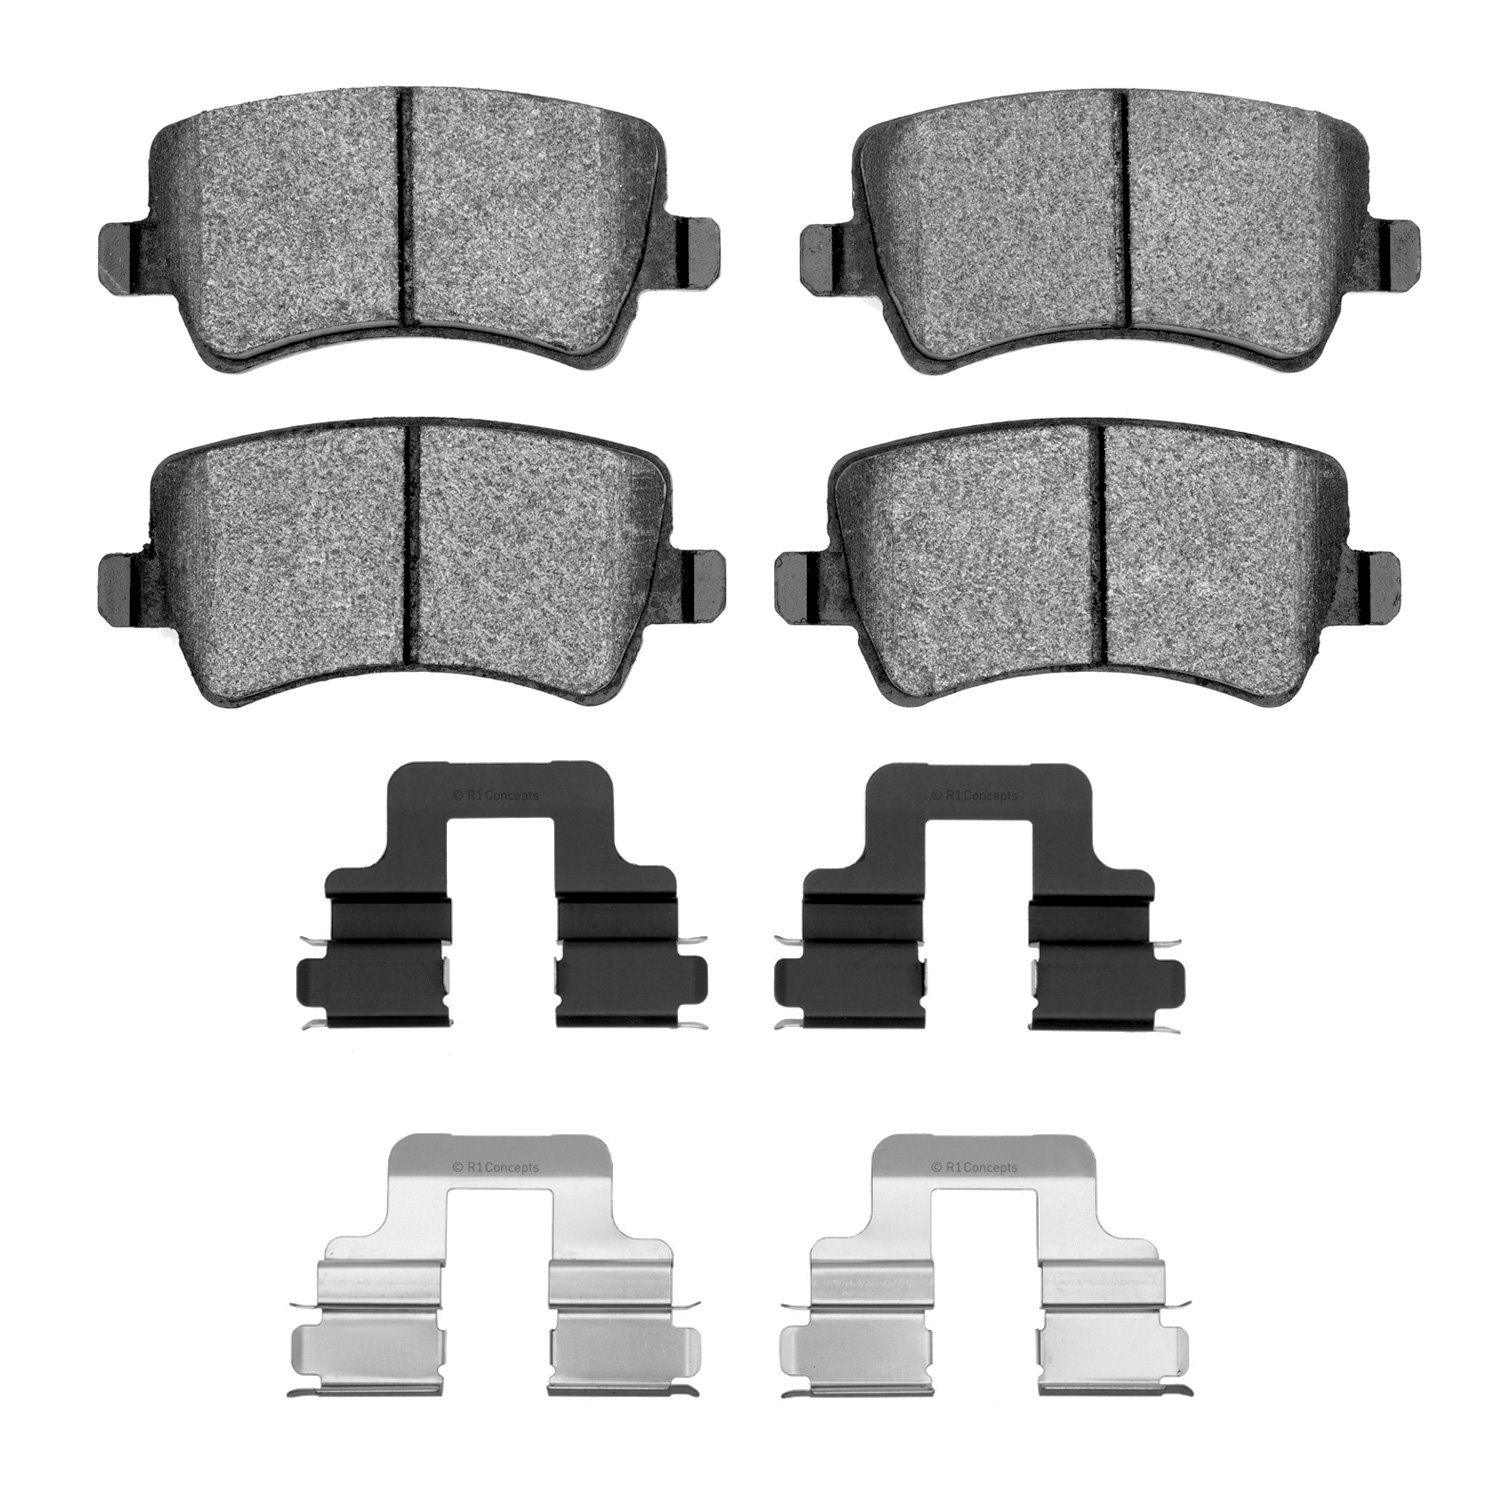 1552-1307-01 5000 Advanced Low-Metallic Brake Pads & Hardware Kit, 2012-2015 Land Rover, Position: Rear